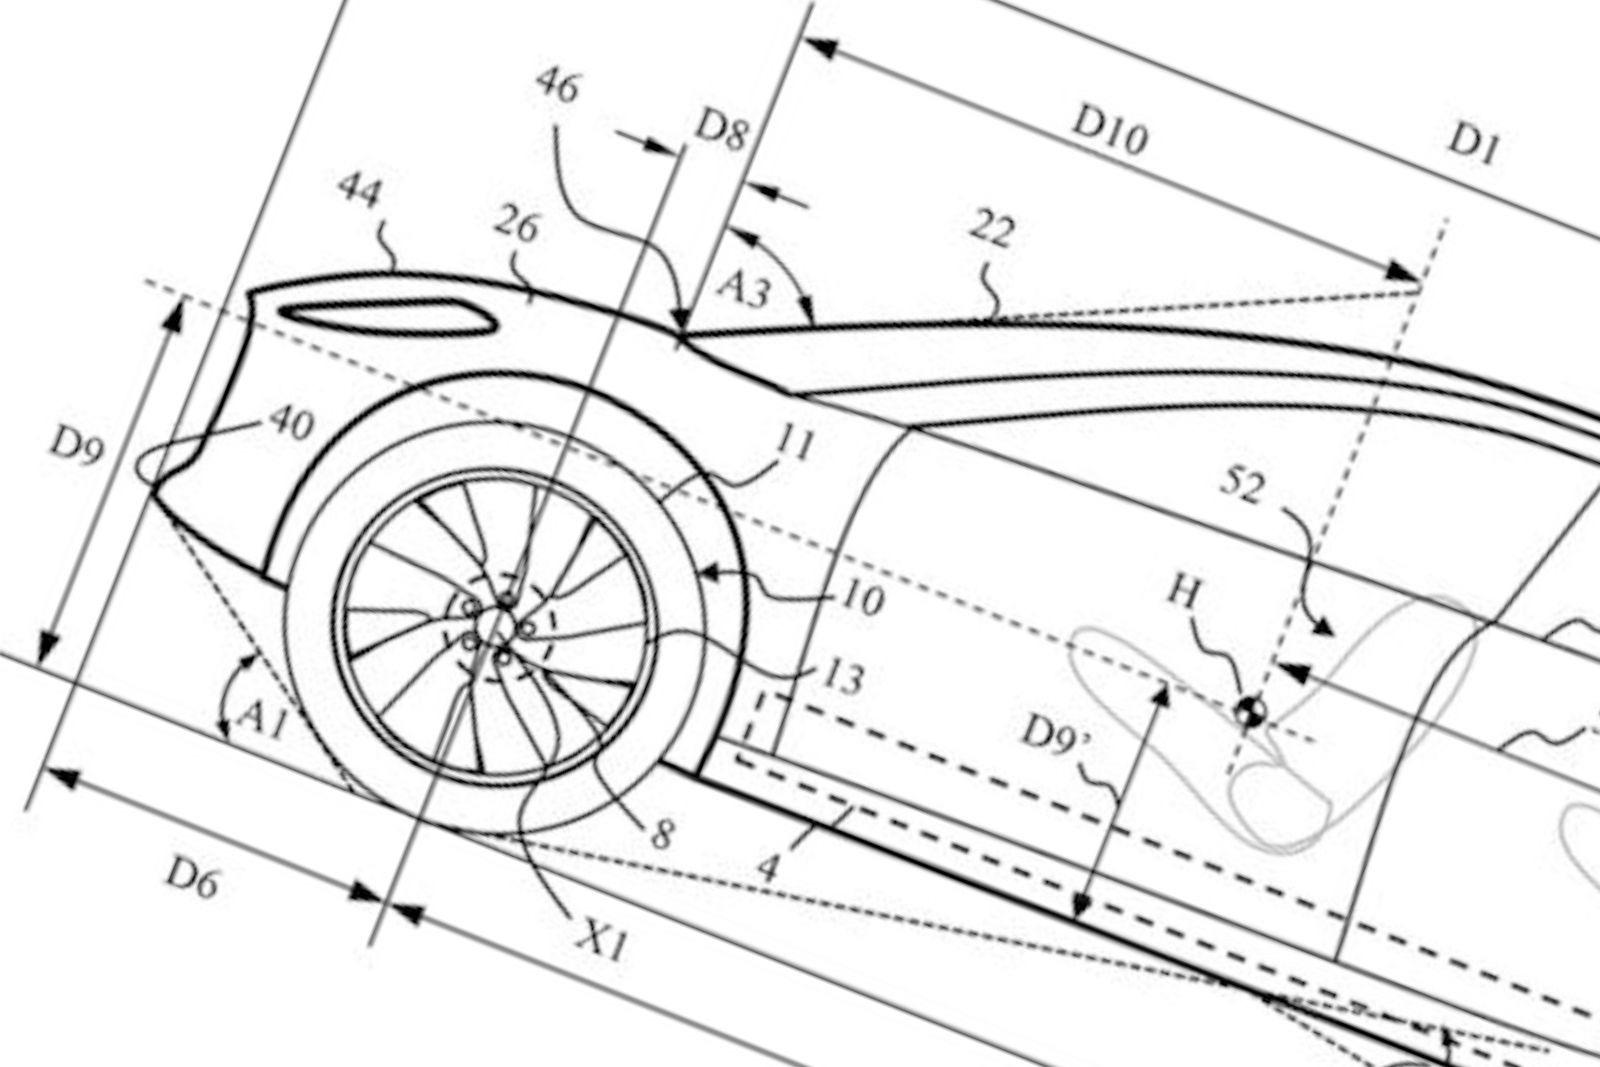 Dyson Patent Images image 1